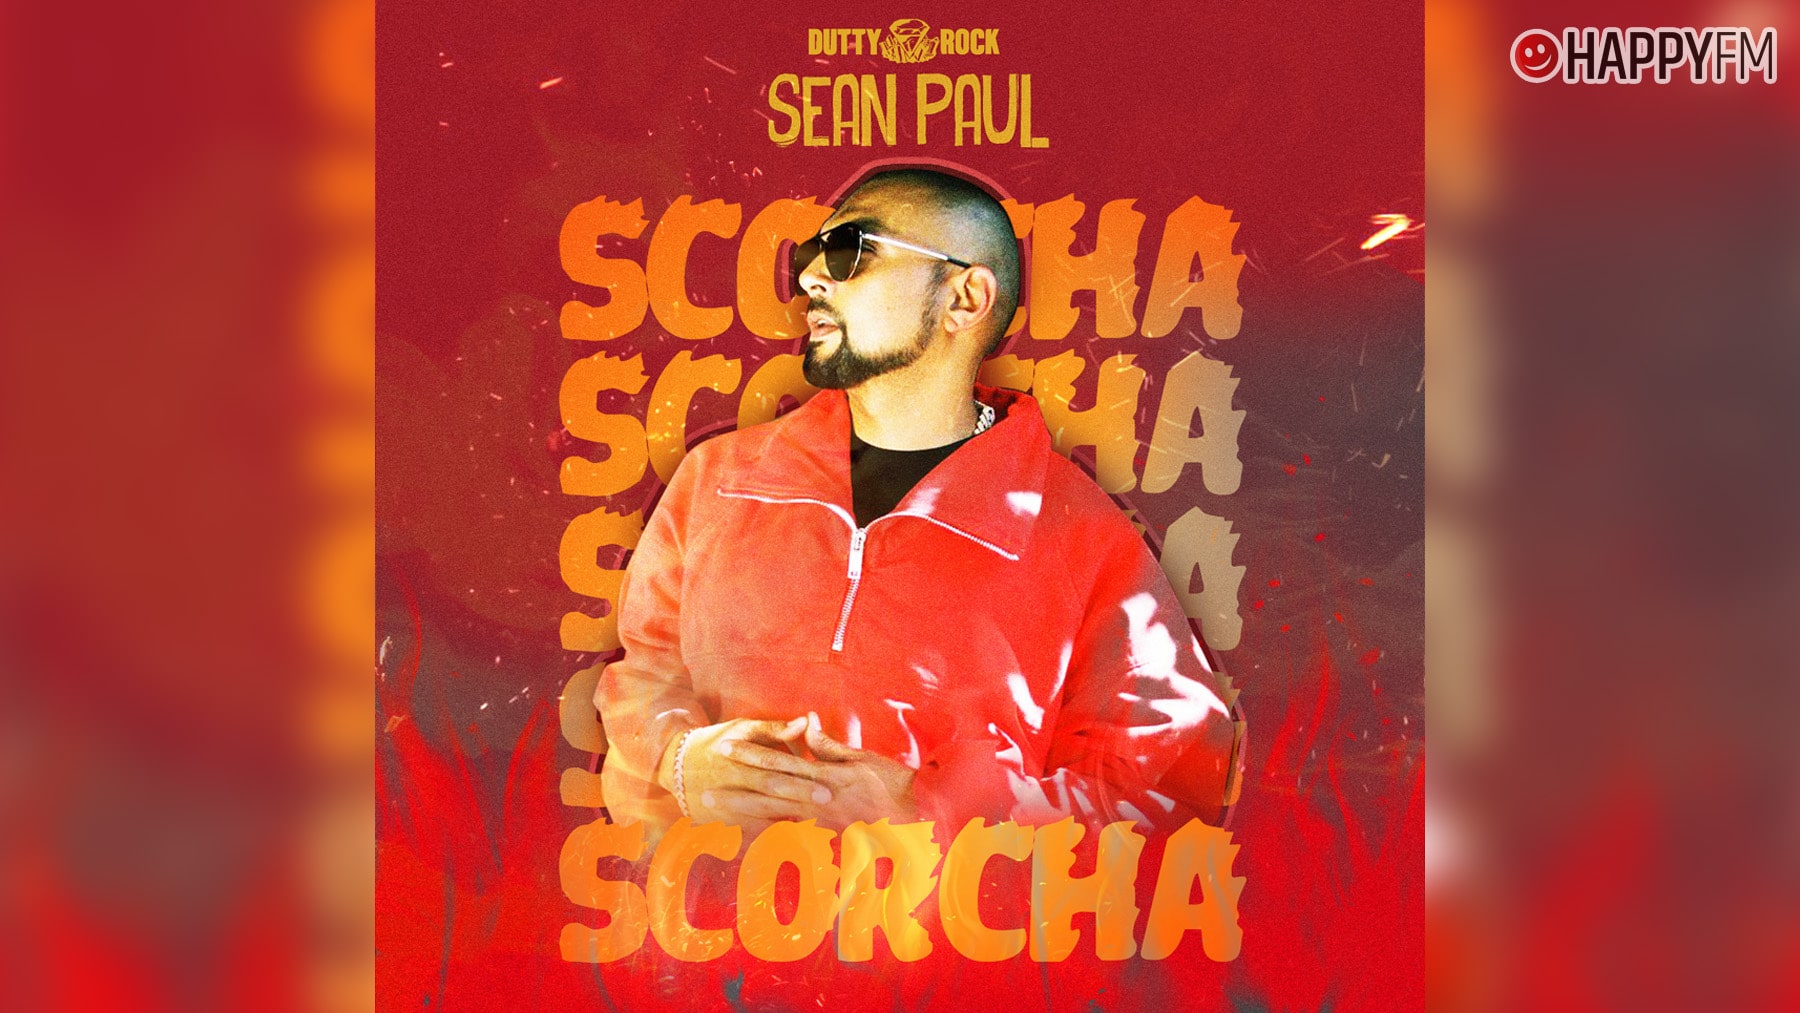 Sean Paul: Canciones imprescindibles de ‘Scorcha’, su nuevo álbum